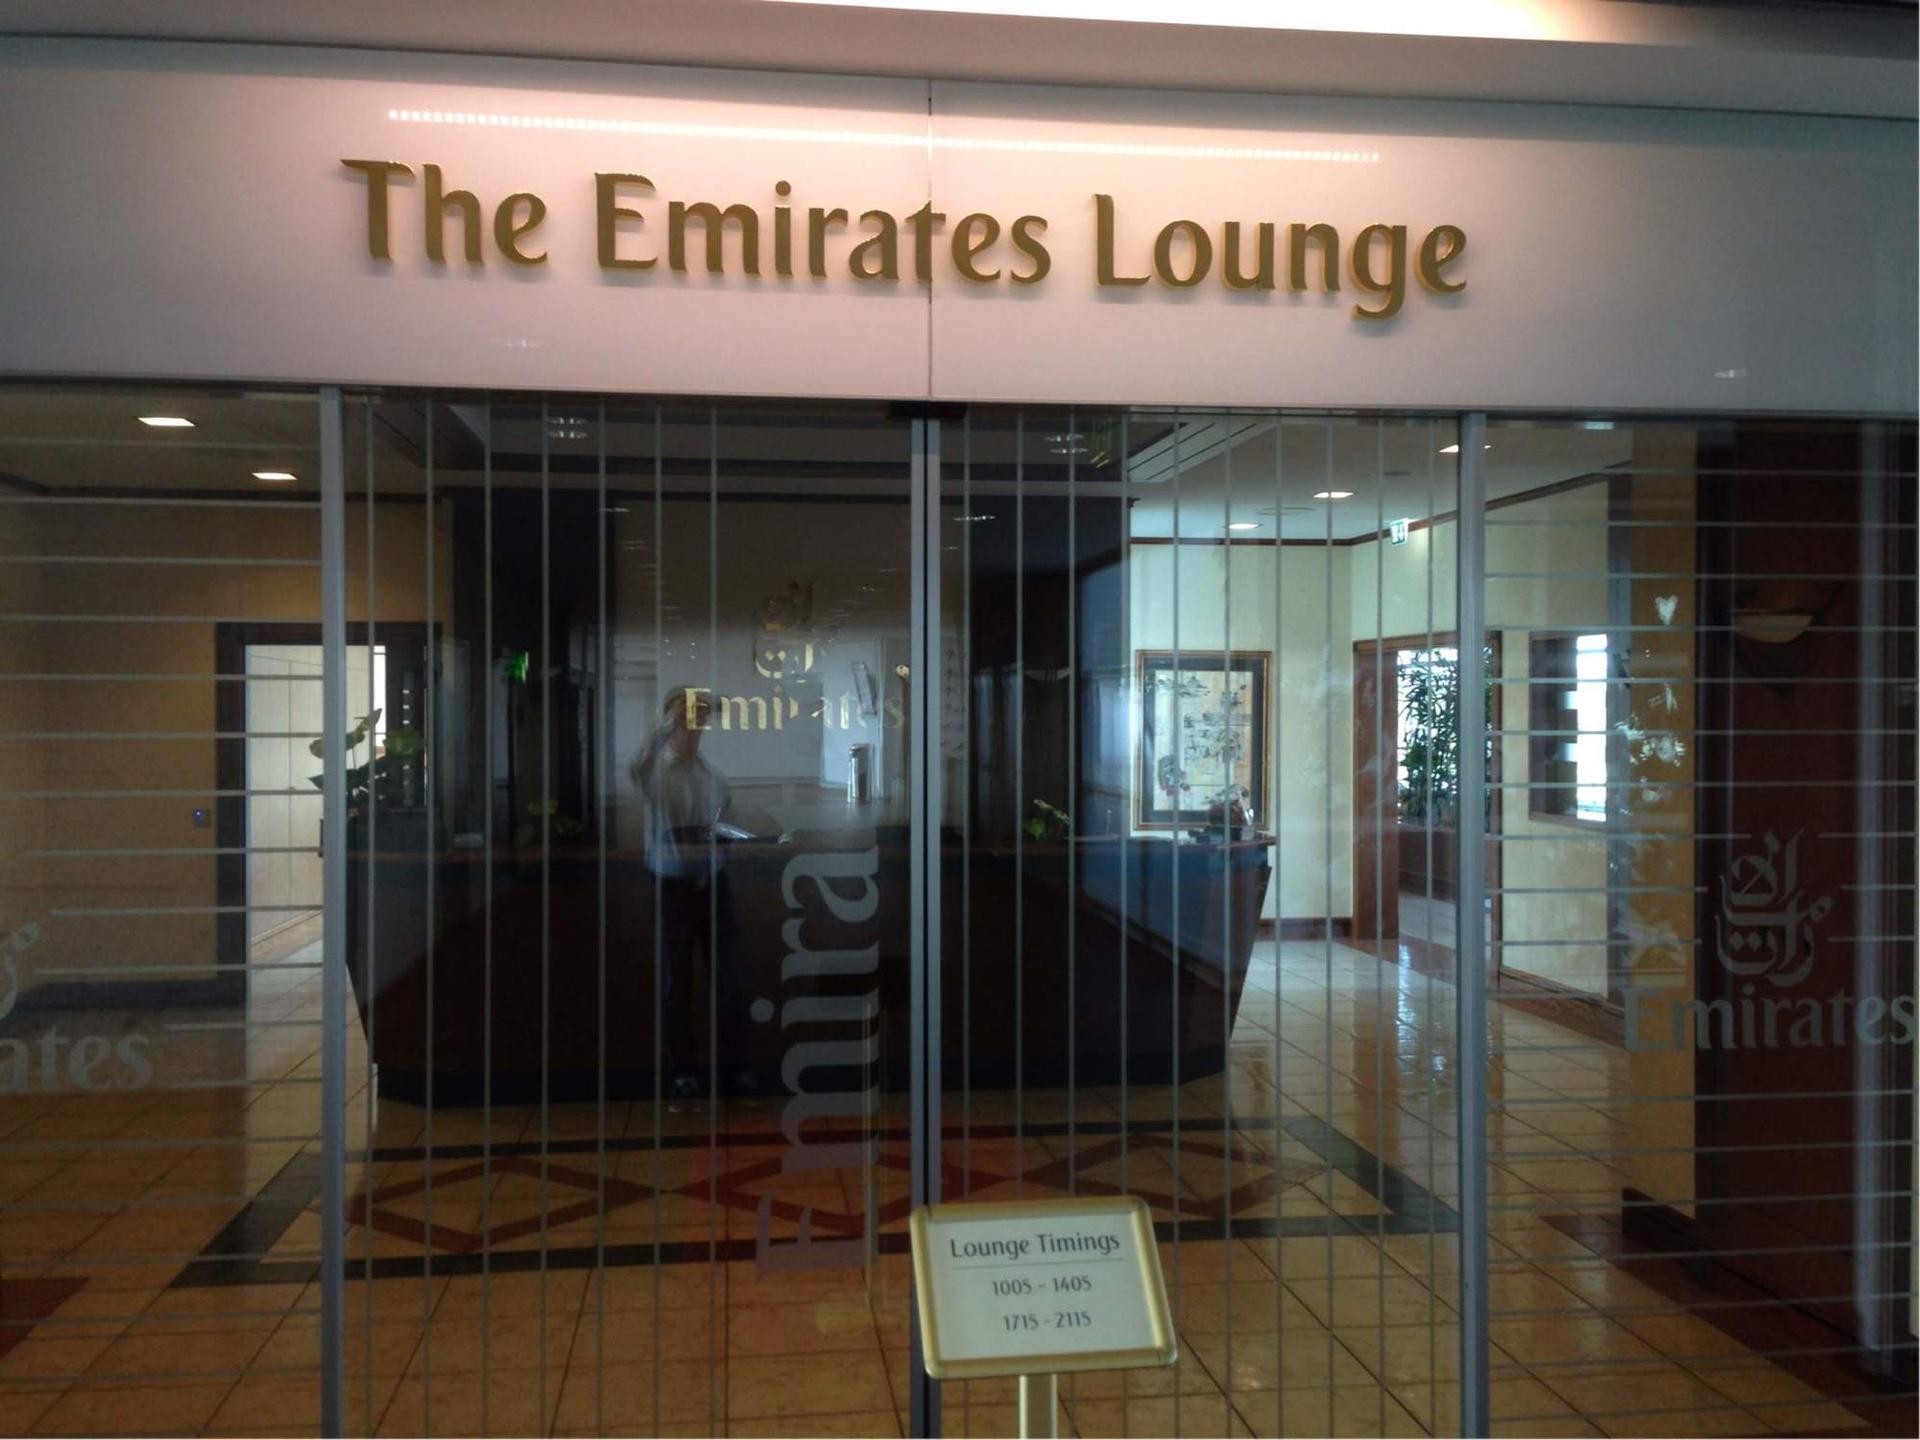 The Emirates Lounge  image 1 of 1